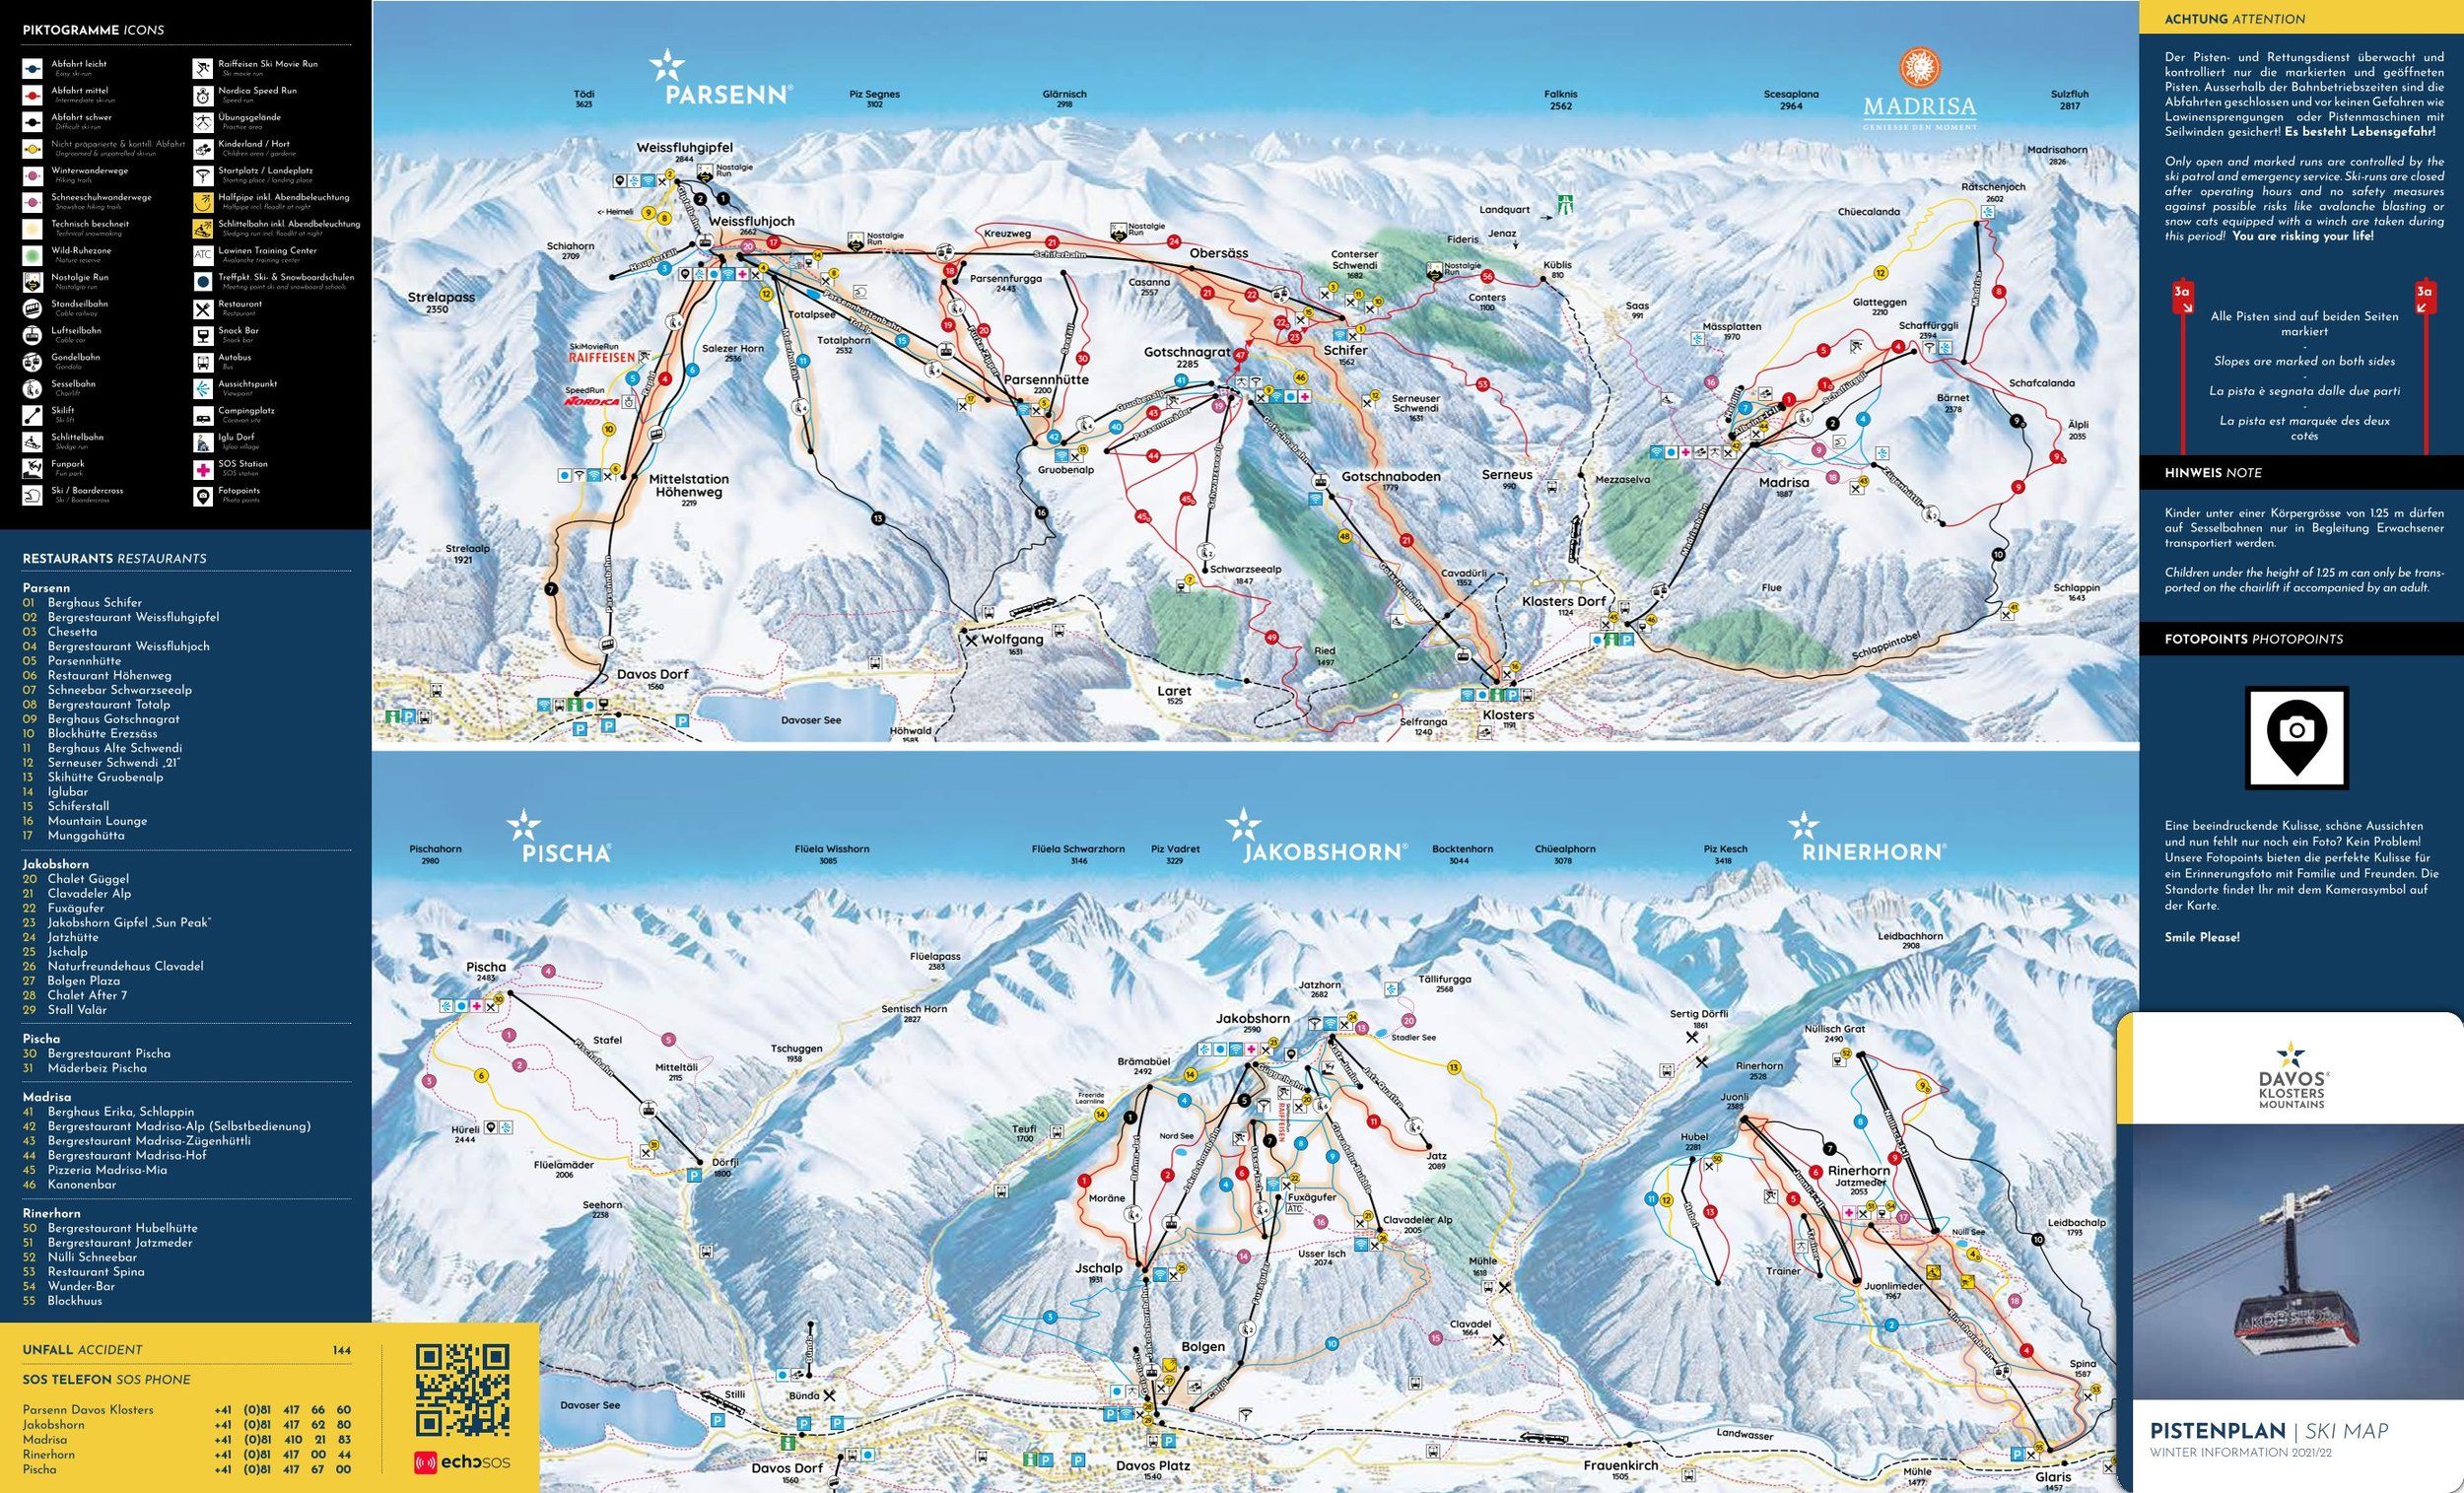 Pistenplan / Karte Skigebiet Klosters, Schweiz